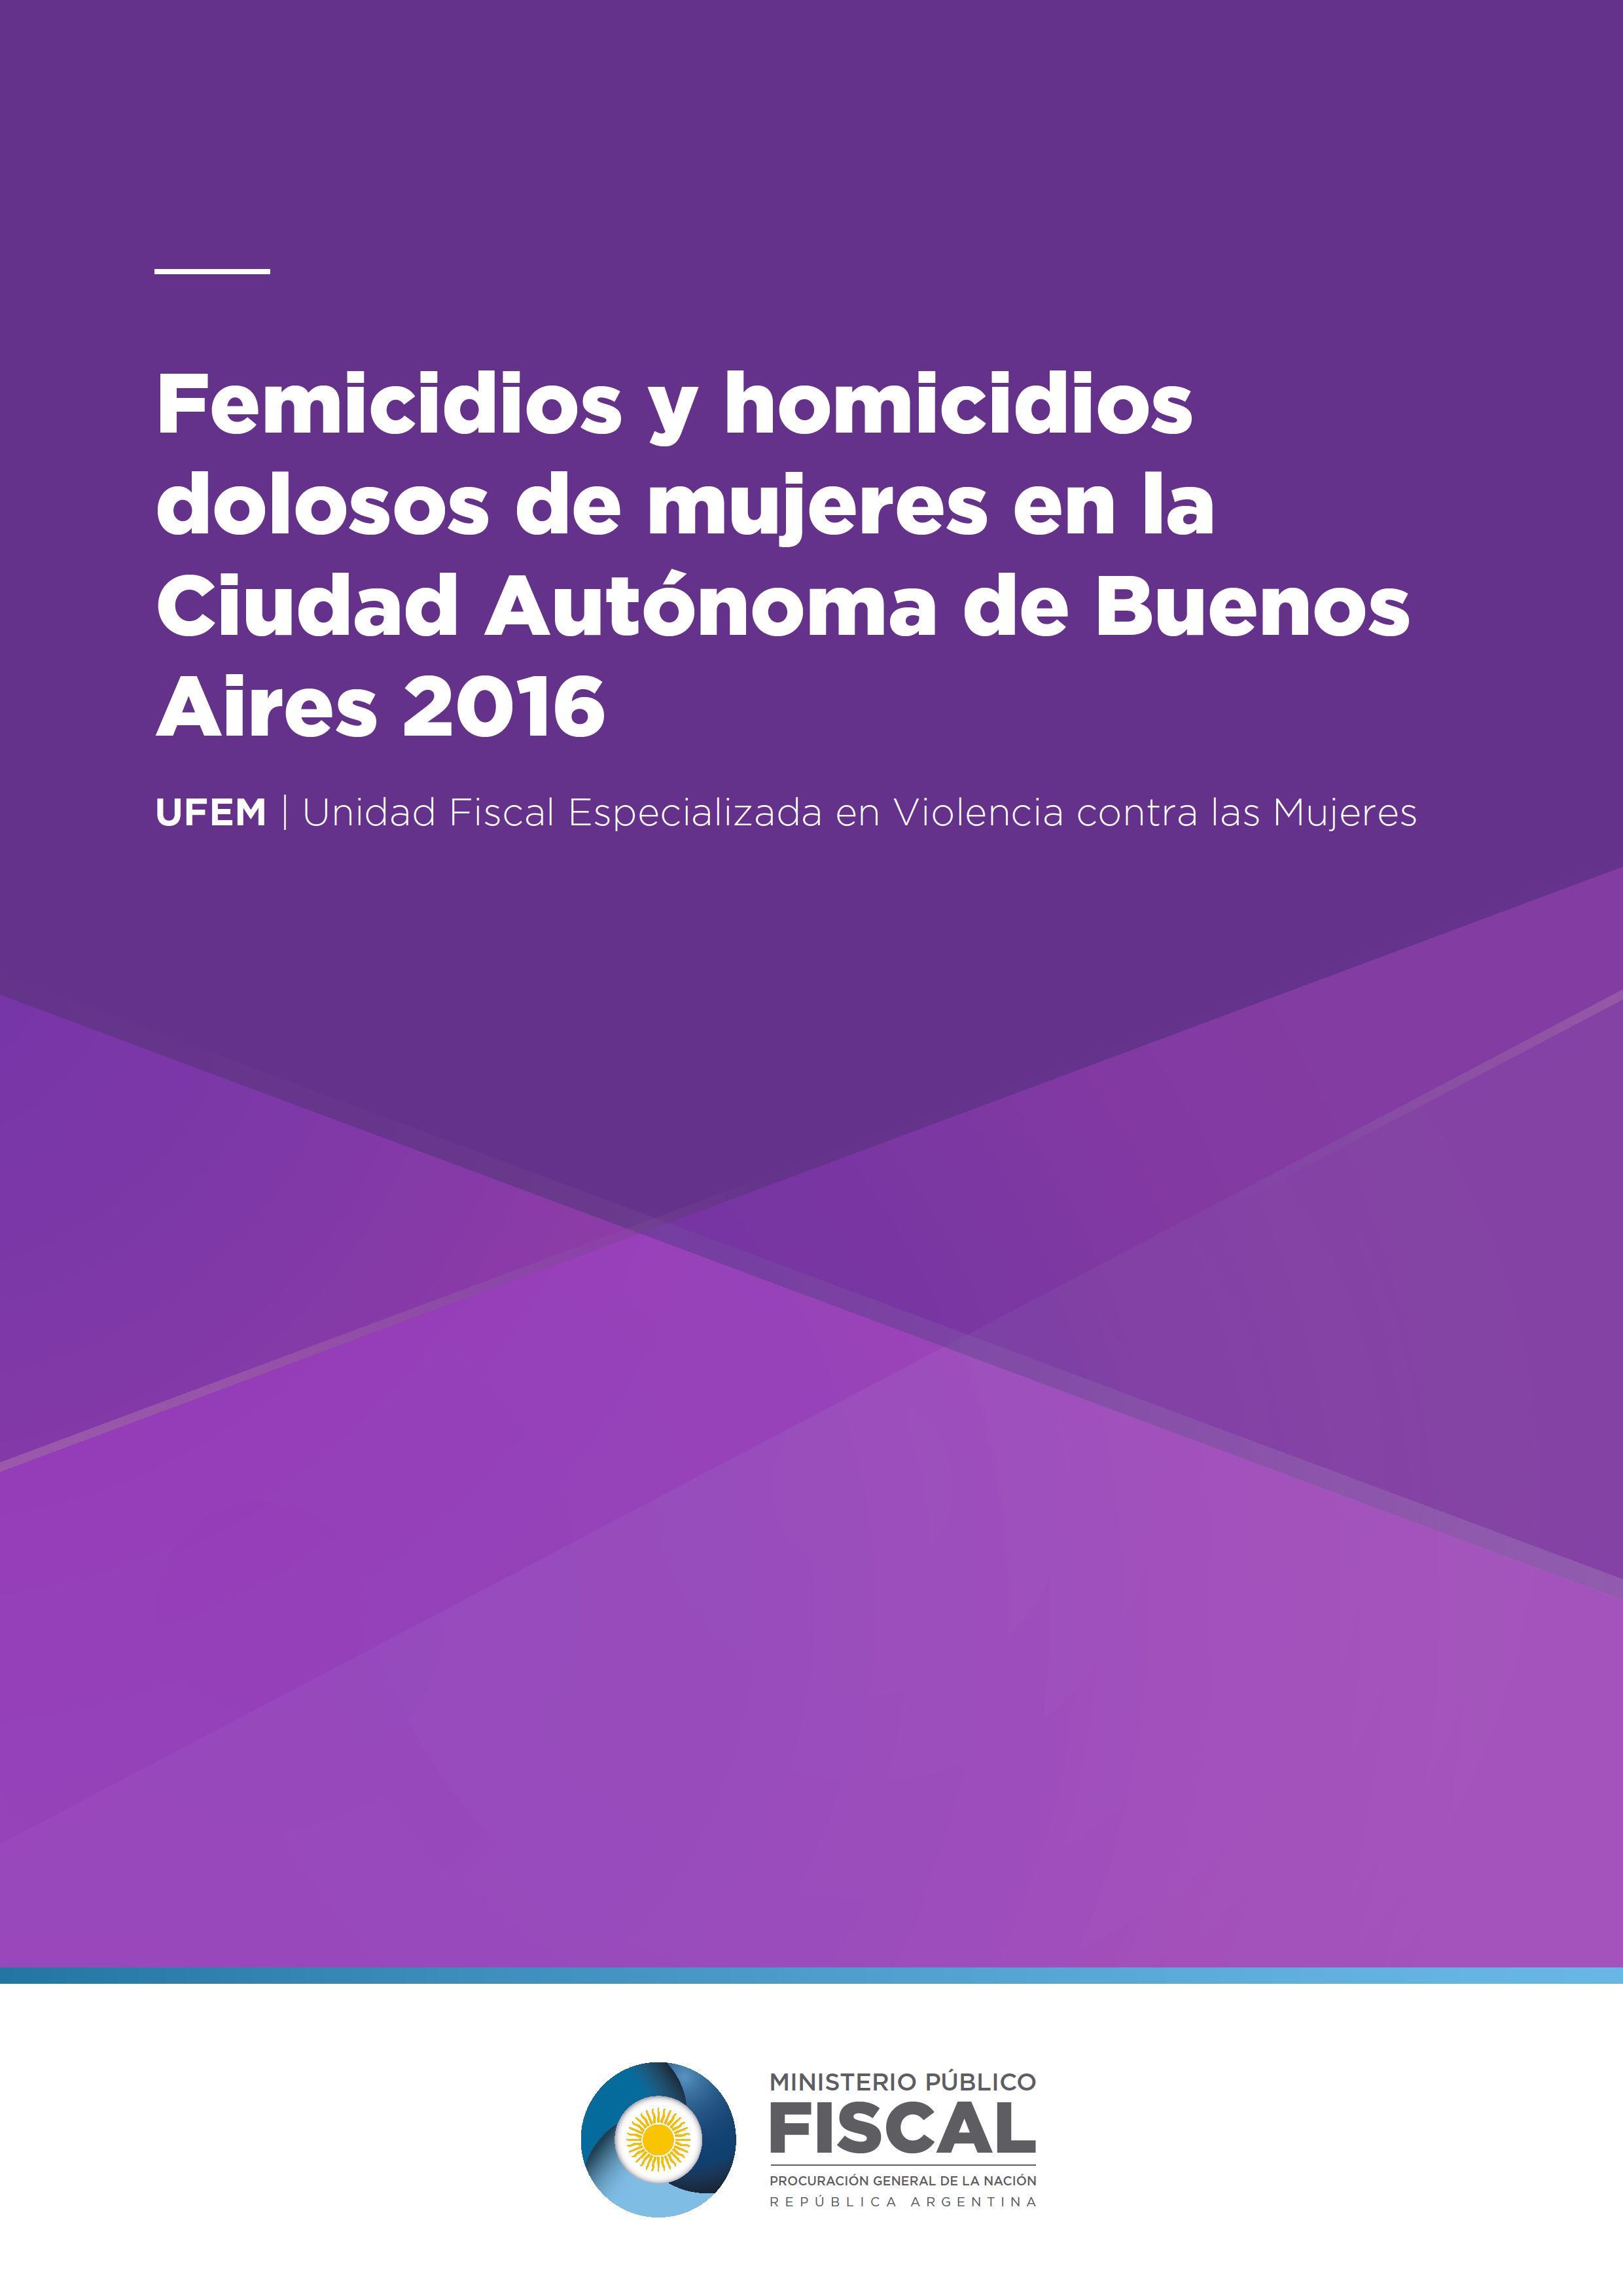 Femicidios y Homicidios dolosos de mujeres en la Ciudad Autónoma de Buenos Aires 2016